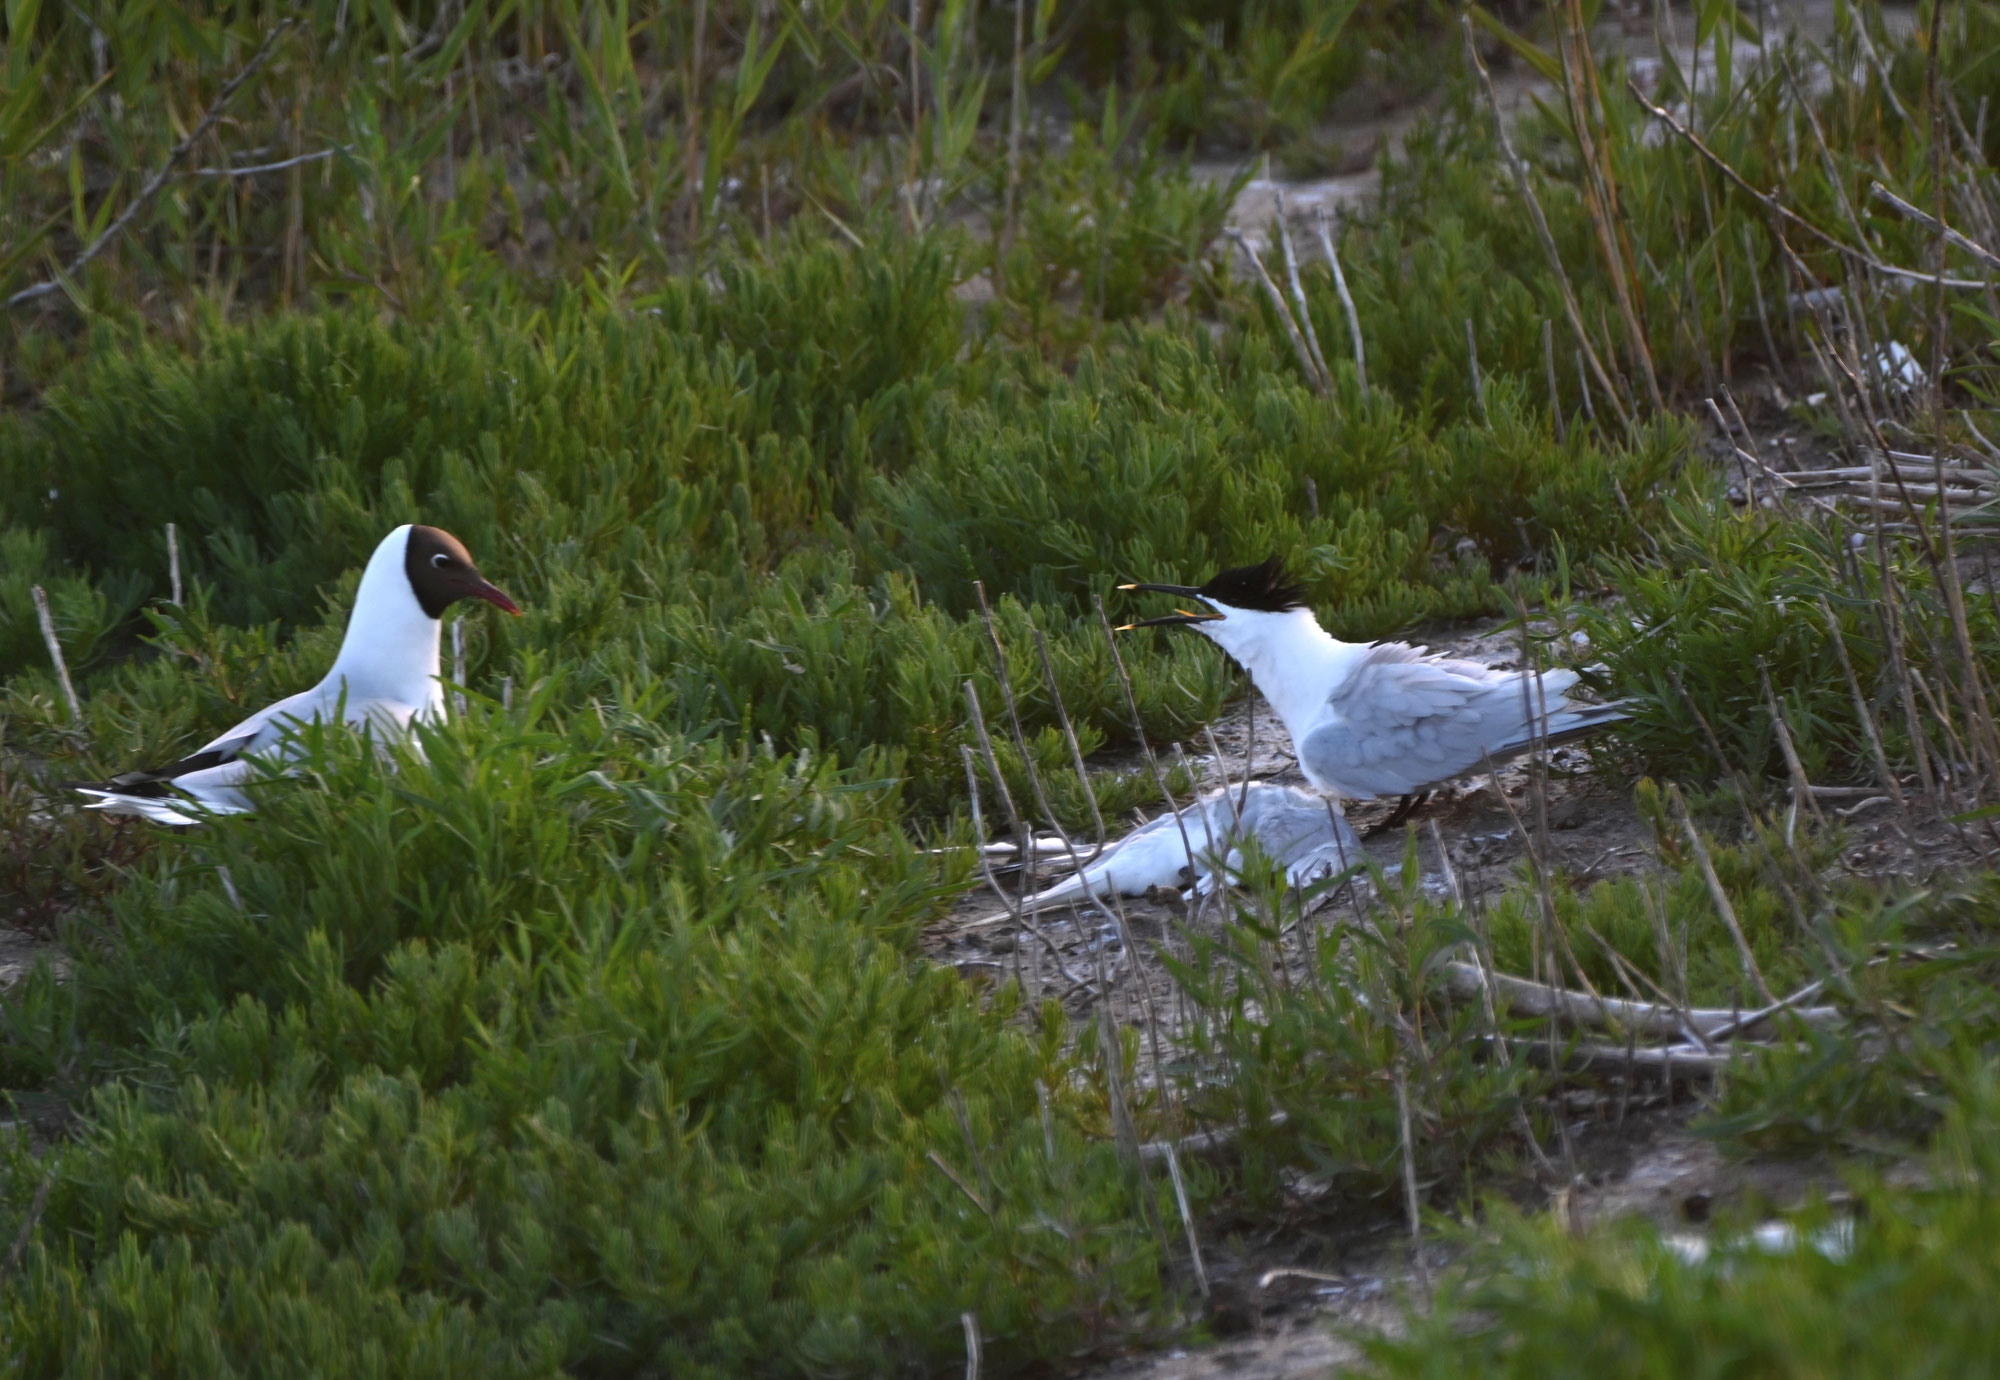 Vogelgrippe bedroht Seevögel in der Nordsee – Naturschützer:innen fordern mehr Schutzmaßnahmen, um Artensterben zu verhindern